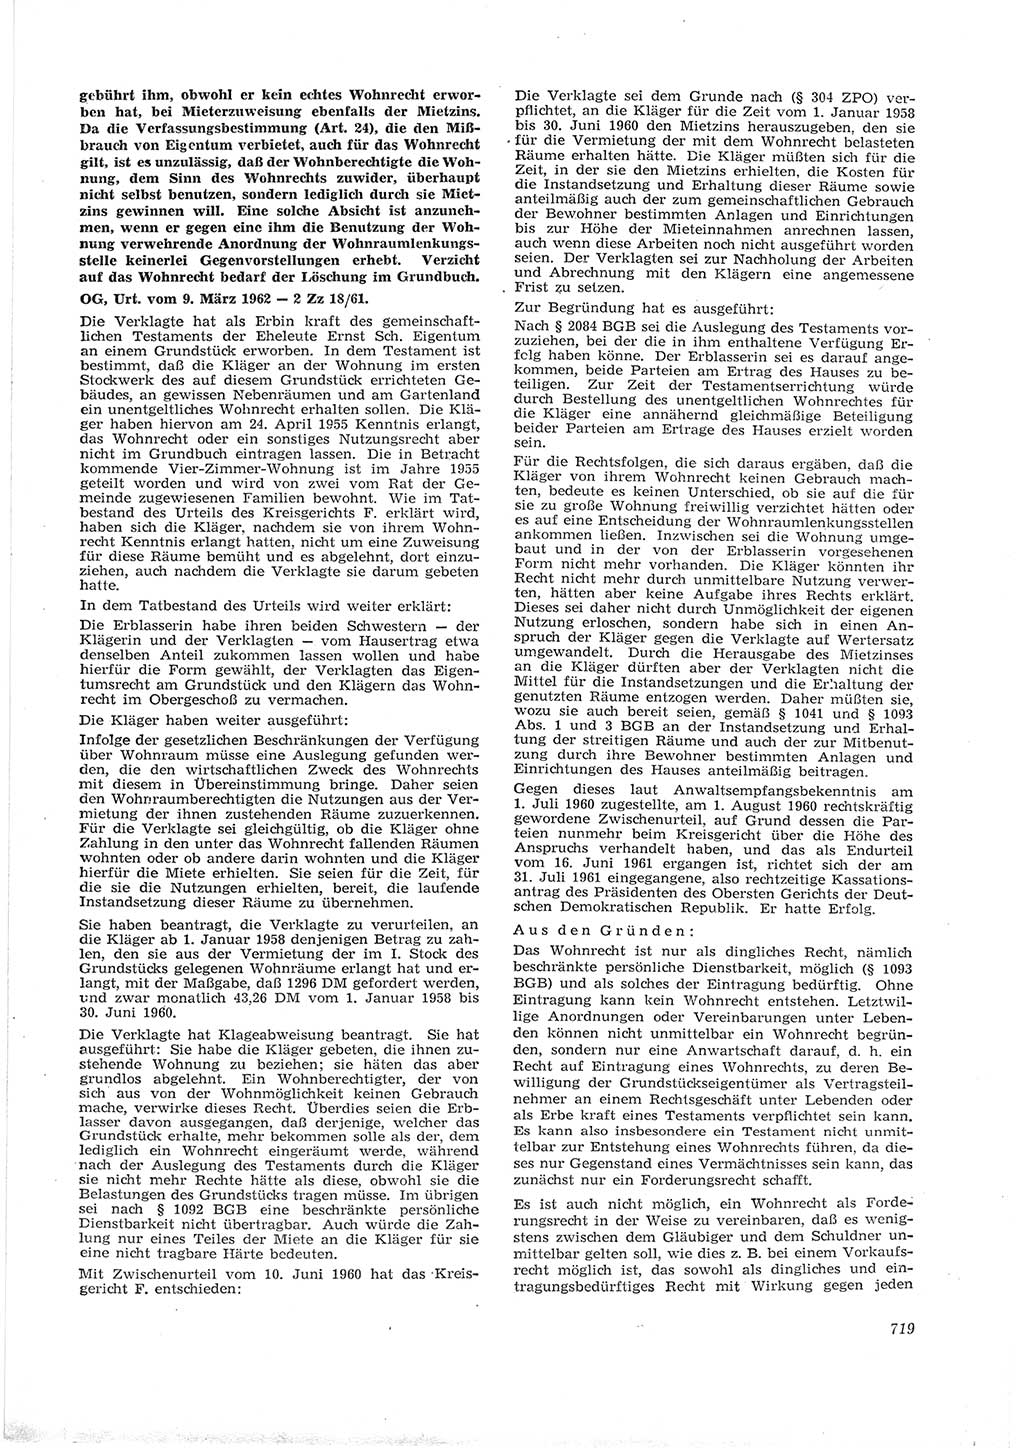 Neue Justiz (NJ), Zeitschrift für Recht und Rechtswissenschaft [Deutsche Demokratische Republik (DDR)], 16. Jahrgang 1962, Seite 719 (NJ DDR 1962, S. 719)